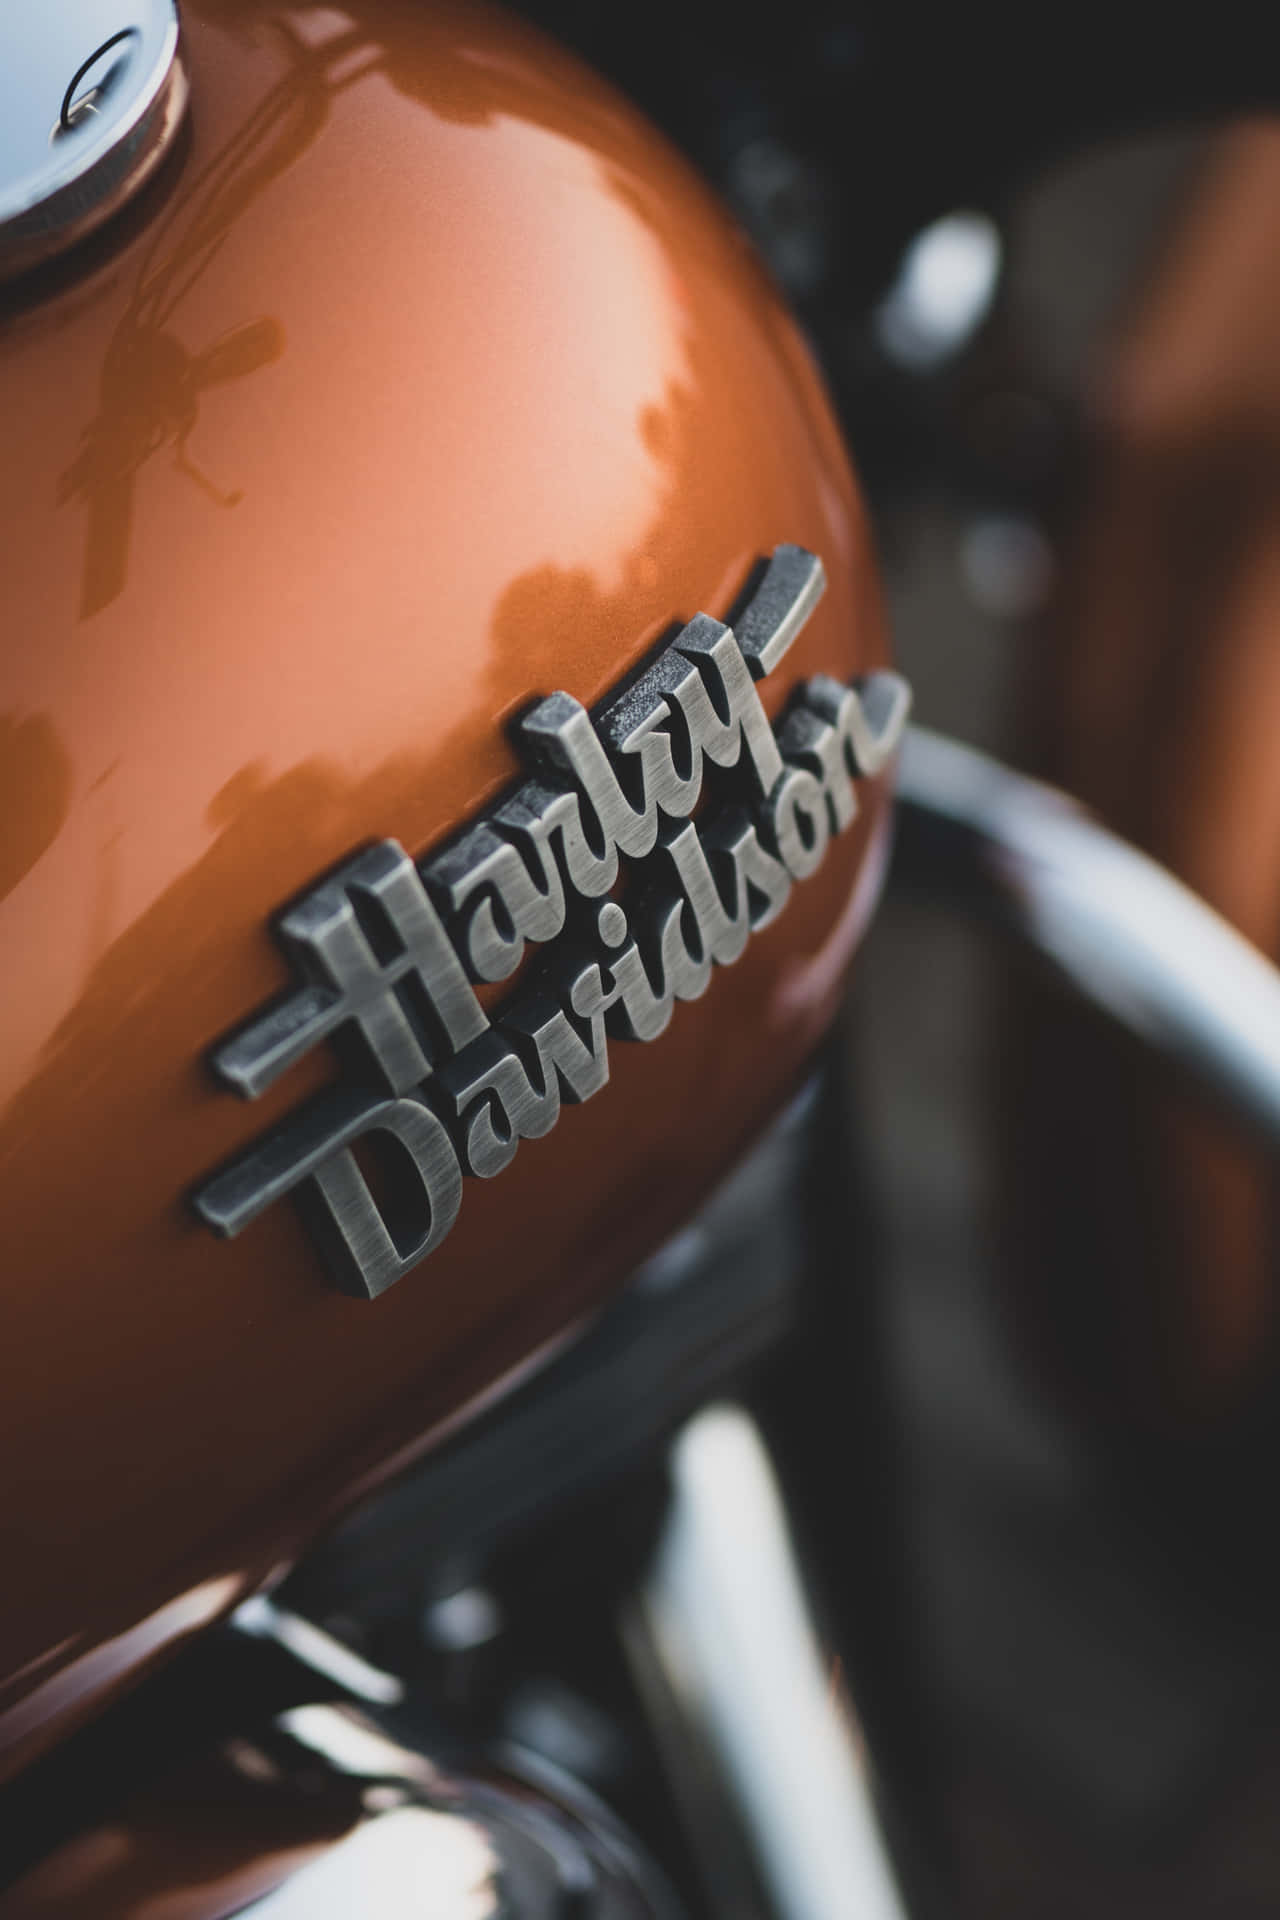 Njutav Den Öppna Vägen På En Harley Davidson Hd-motorcykel. Wallpaper